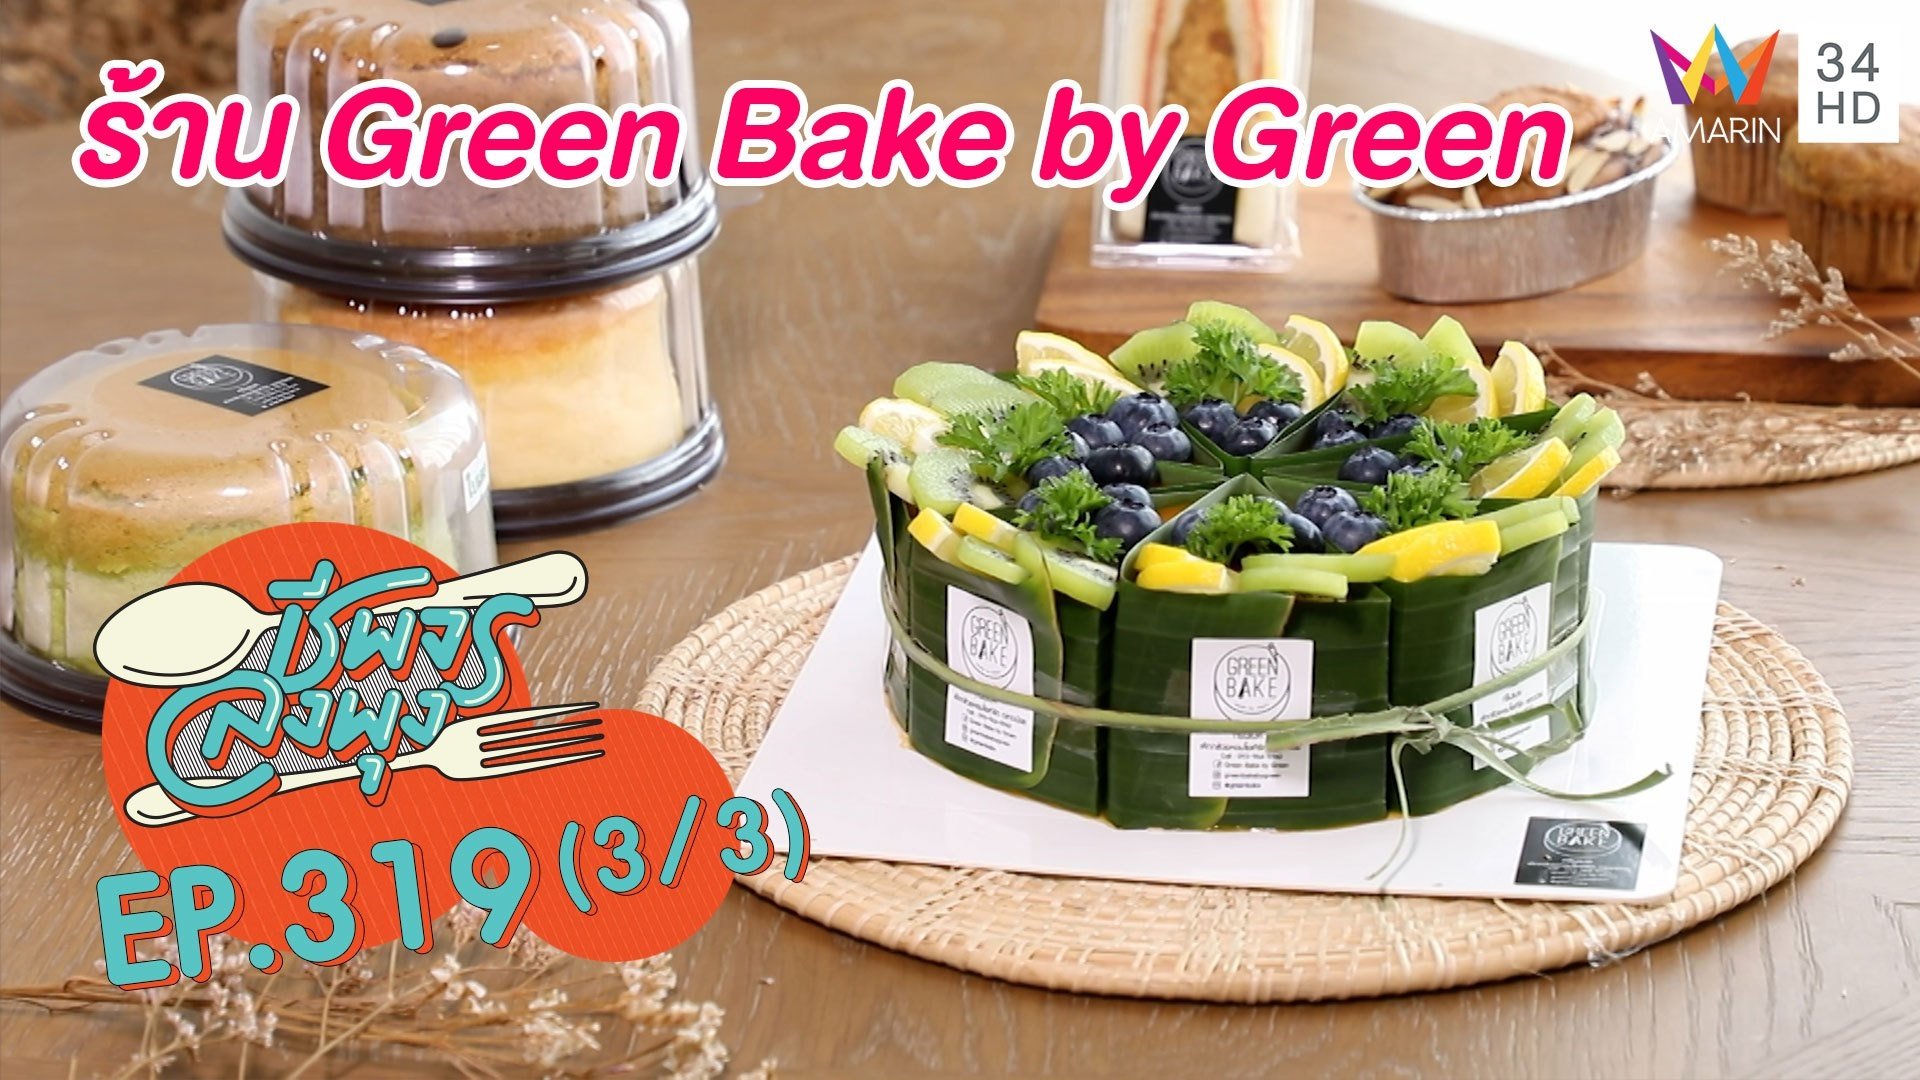 สดใหม่ทำด้วยหัวใจ @ร้าน Green Bake by Green | ชีพจรลงพุง | 28 ส.ค. 64 (3/3) | AMARIN TVHD34